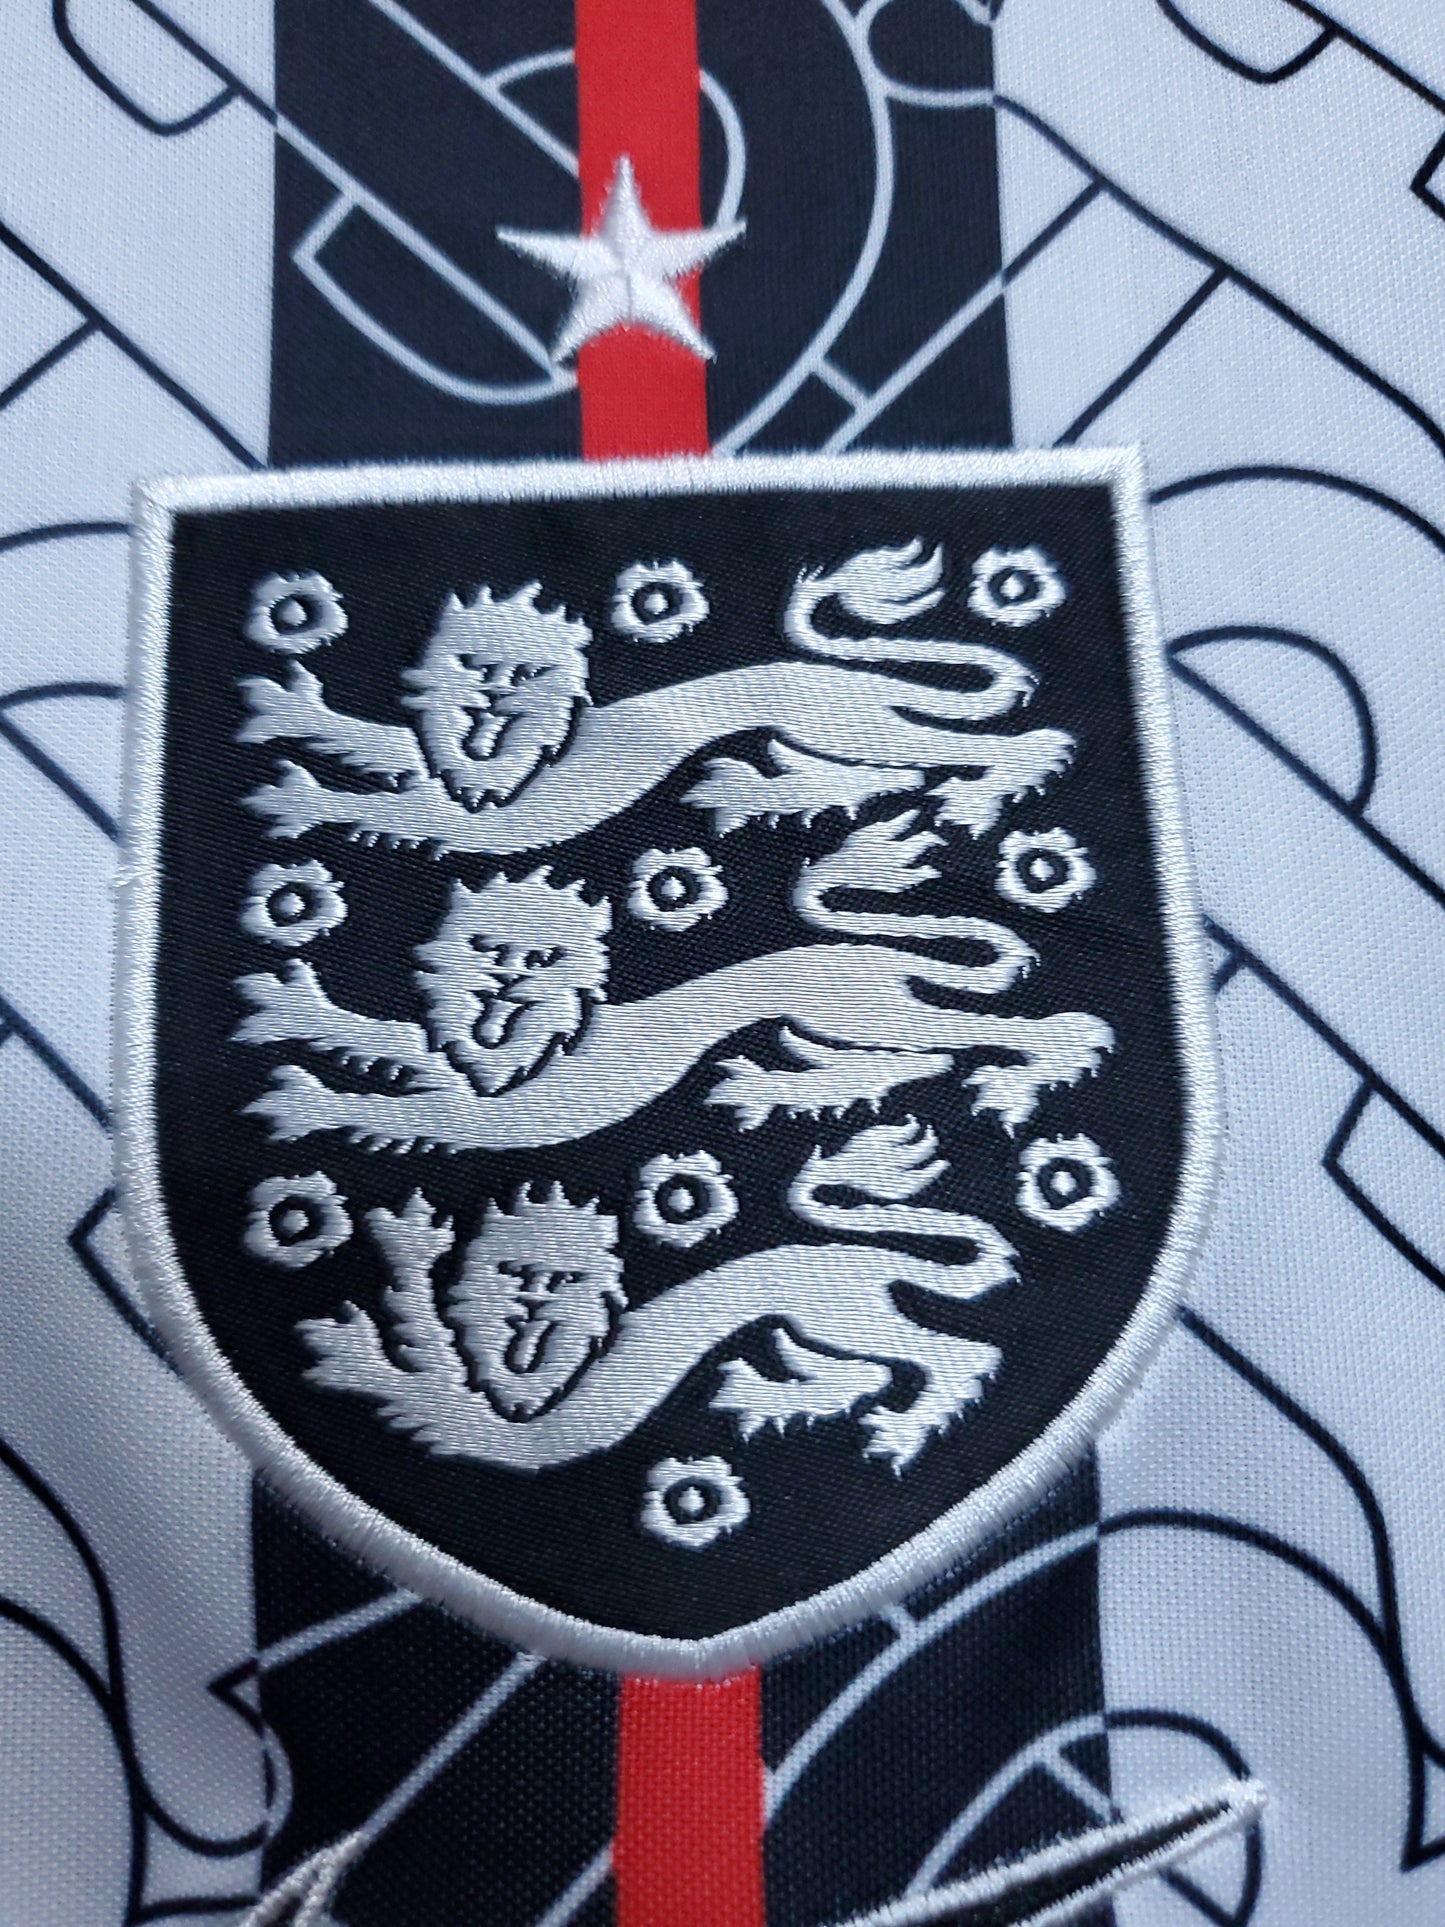 England x Burberry Special Shirt 2022/23